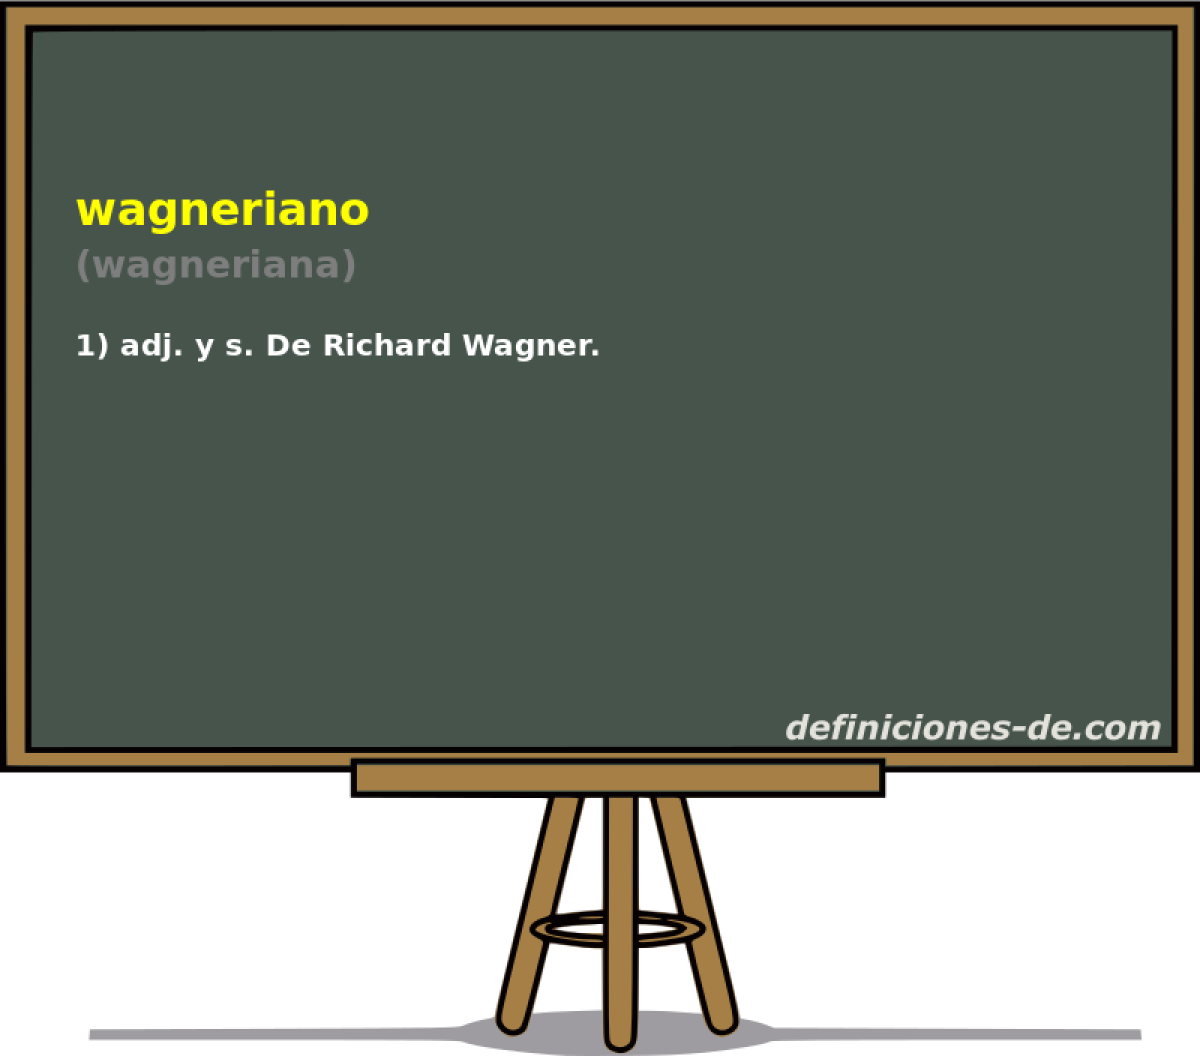 wagneriano (wagneriana)